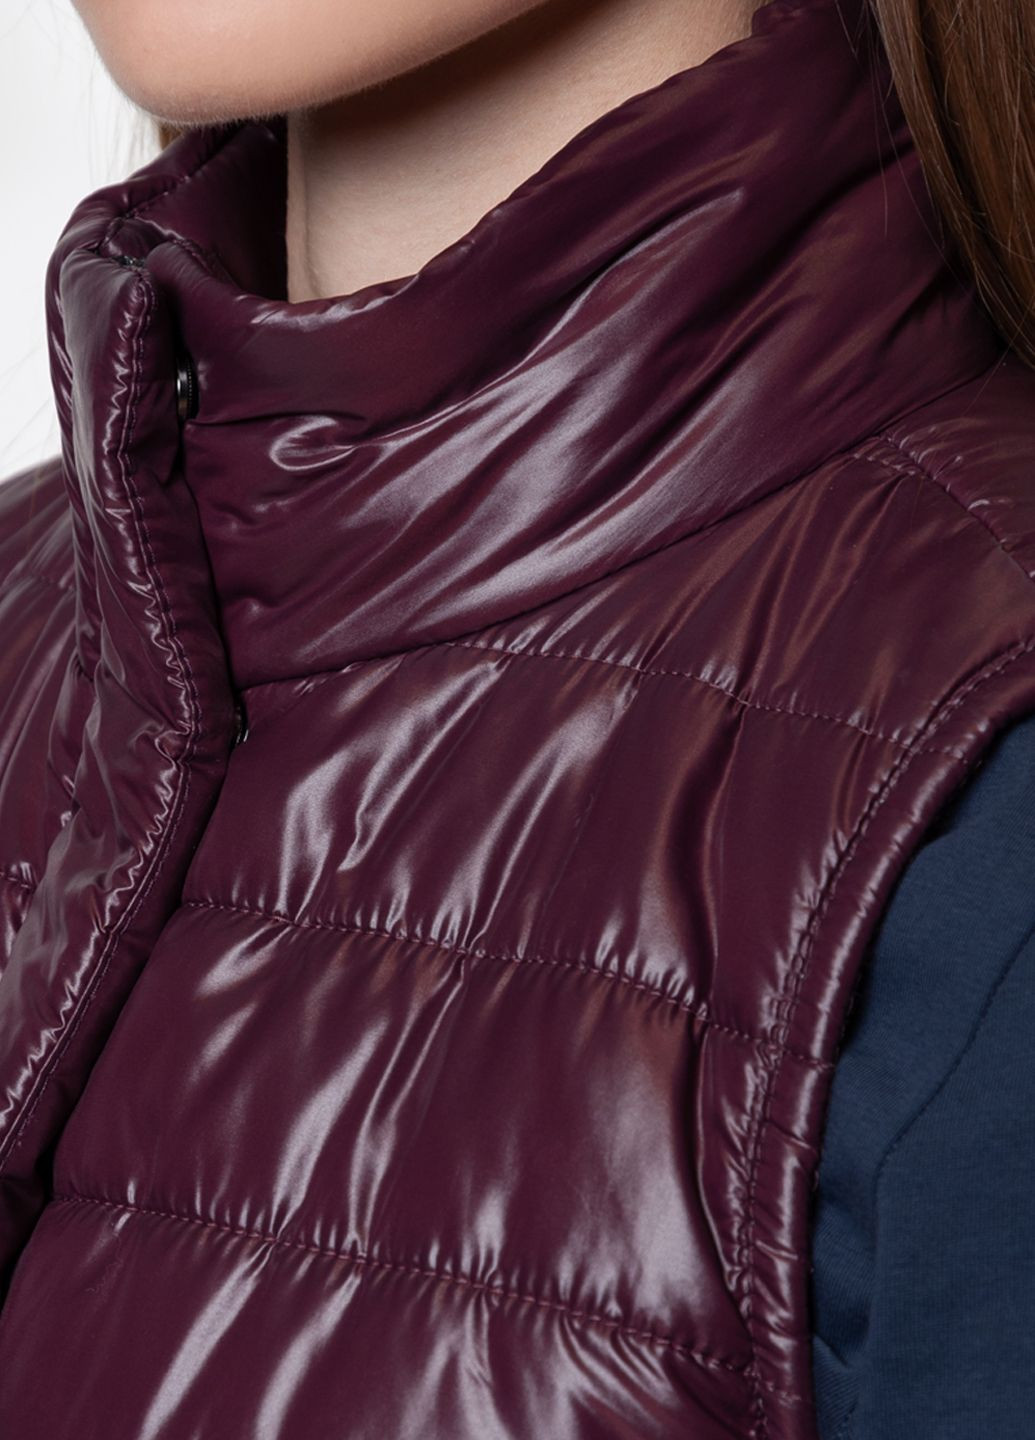 Куртка-жилет женская Arber бордовая Arber Woman vest demi w (282844146)